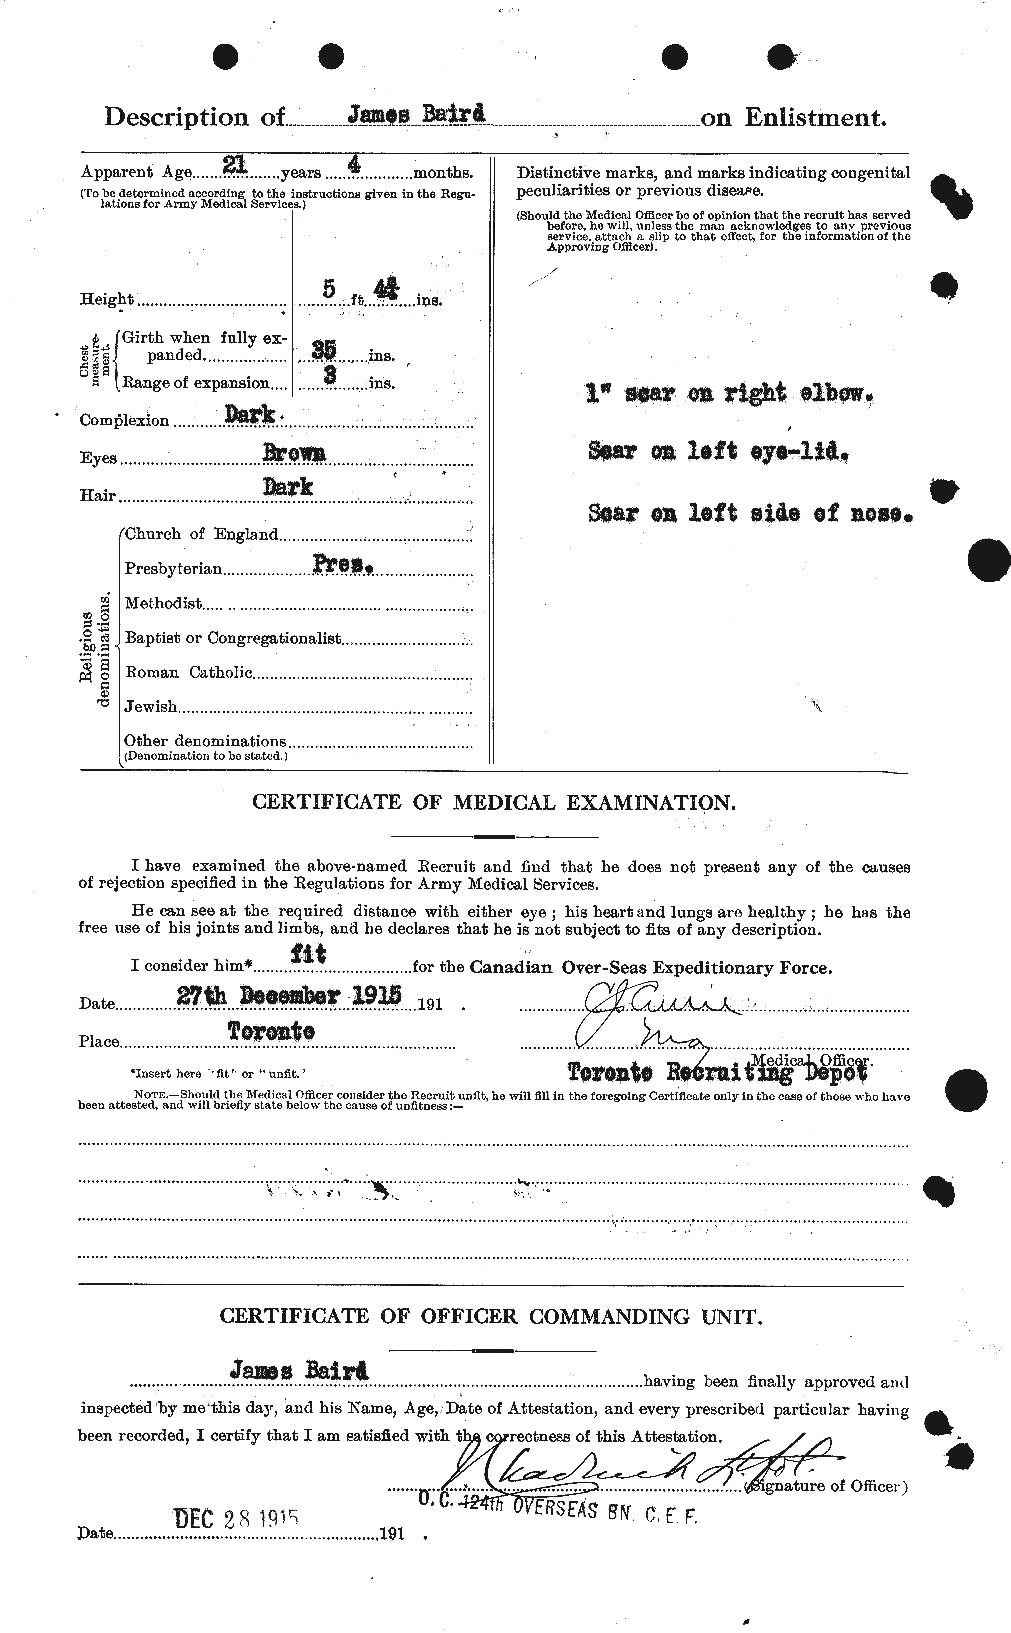 Dossiers du Personnel de la Première Guerre mondiale - CEC 226647b